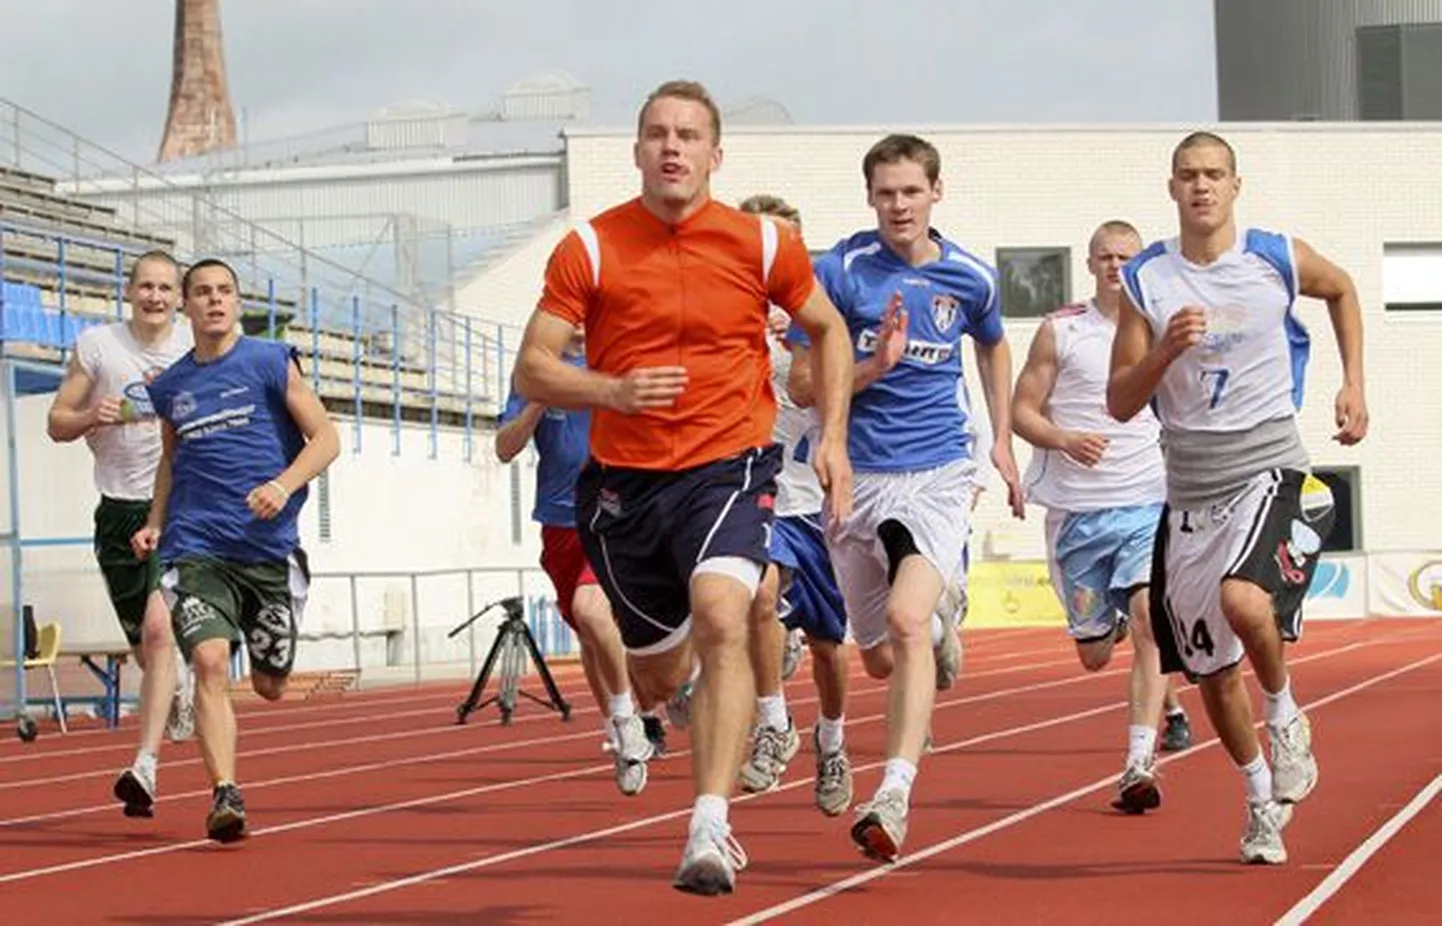 Eesti U20 korvpallikoondise teine laagripäev algas Rakvere staadionil karmide intervalljooksudega. Viimases stardis oli liidrina lippamas Martin Dorbek (paremal).